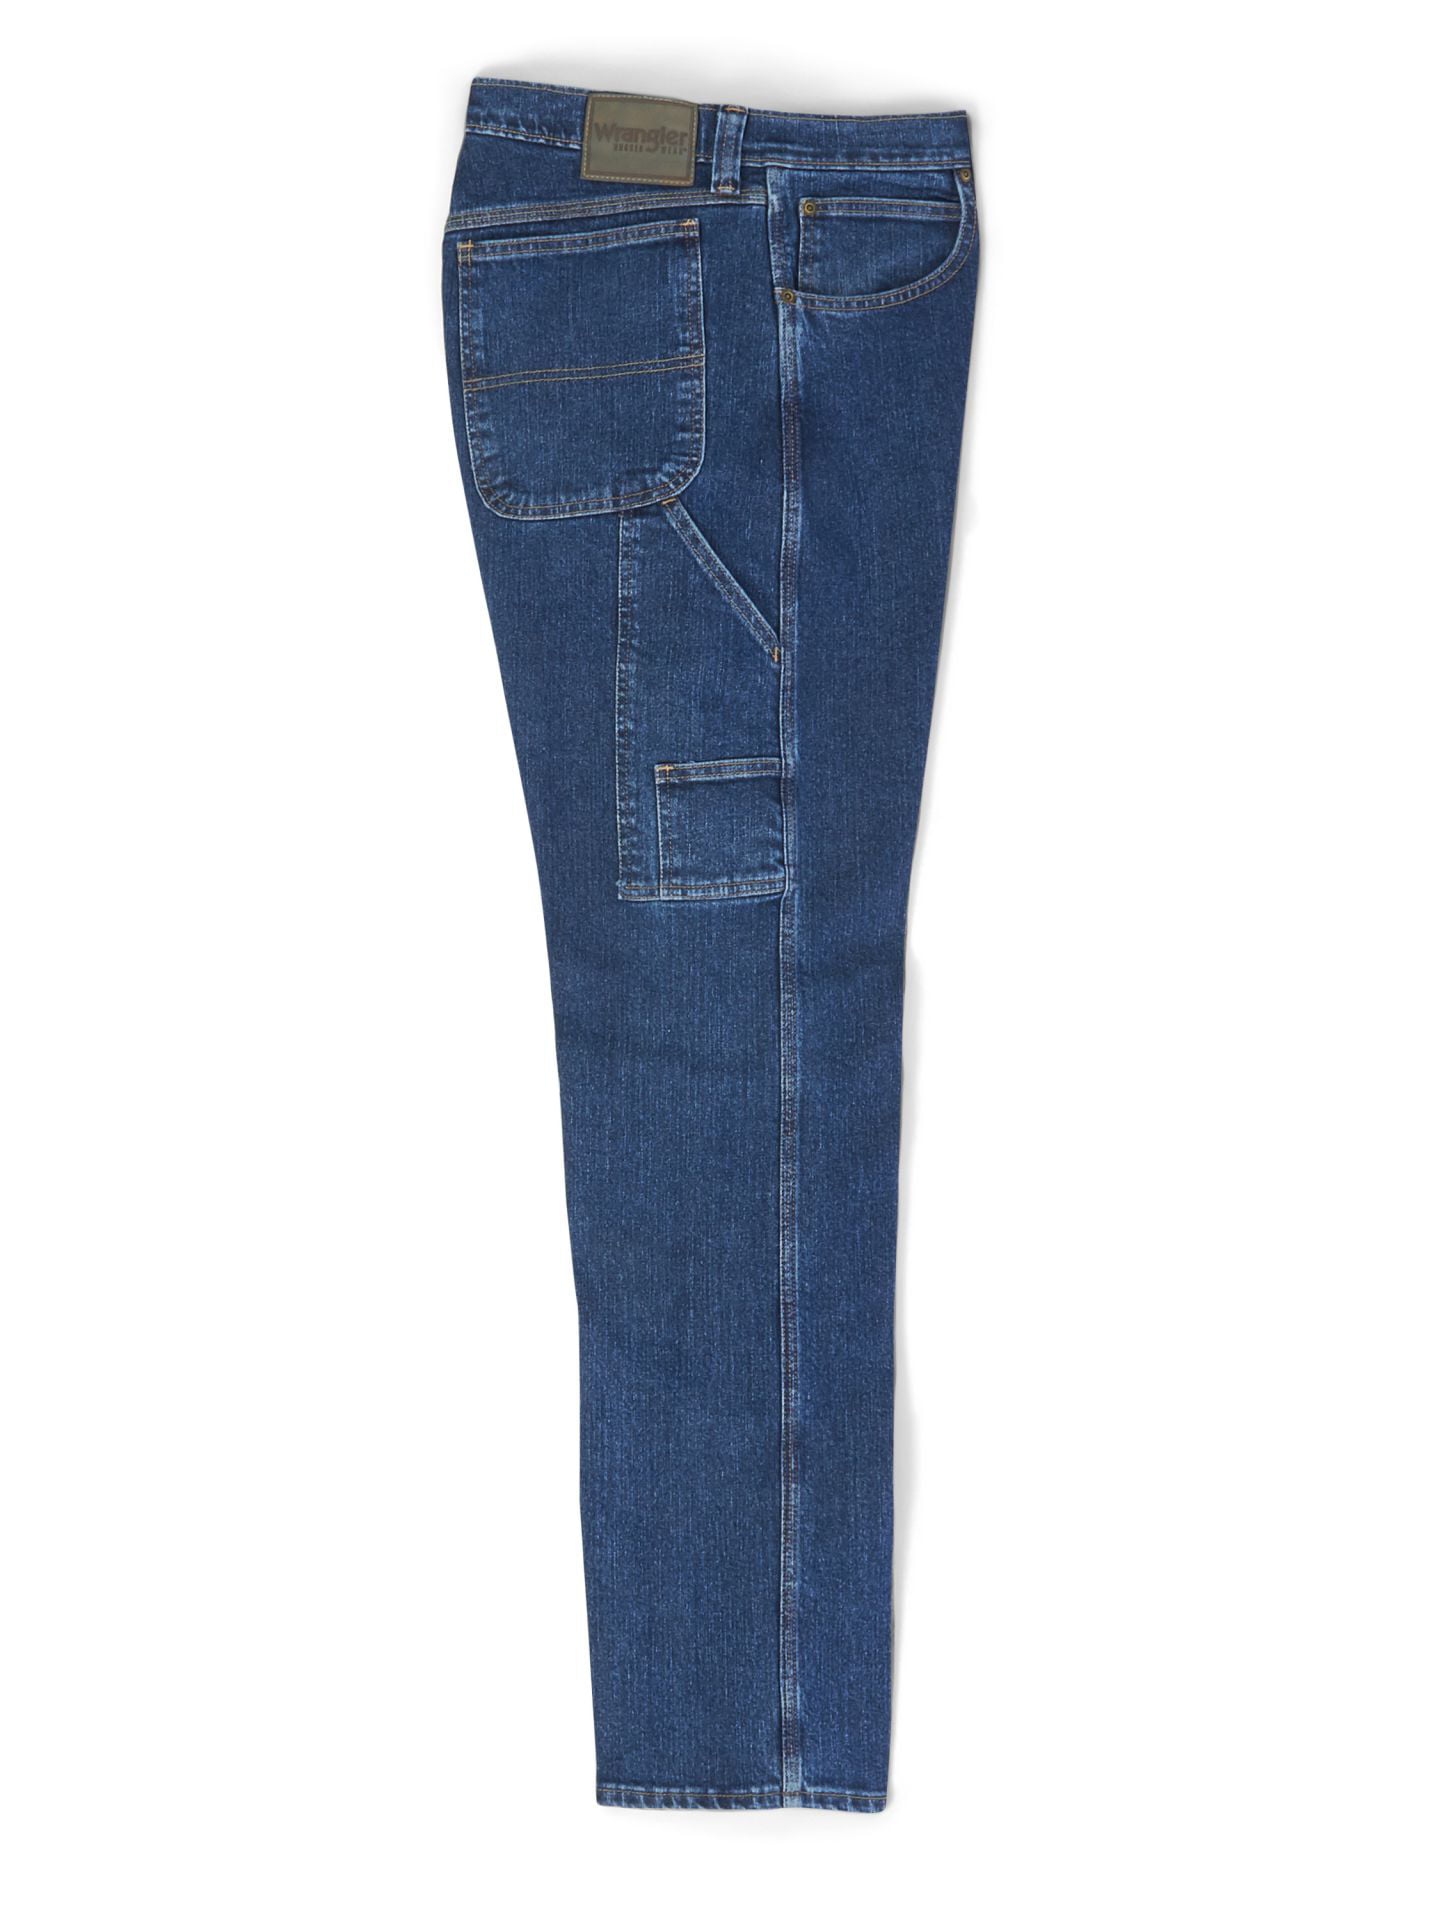 Wrangler Men's Stretch Carpenter Jeans, Mid Blue - Walmart.com